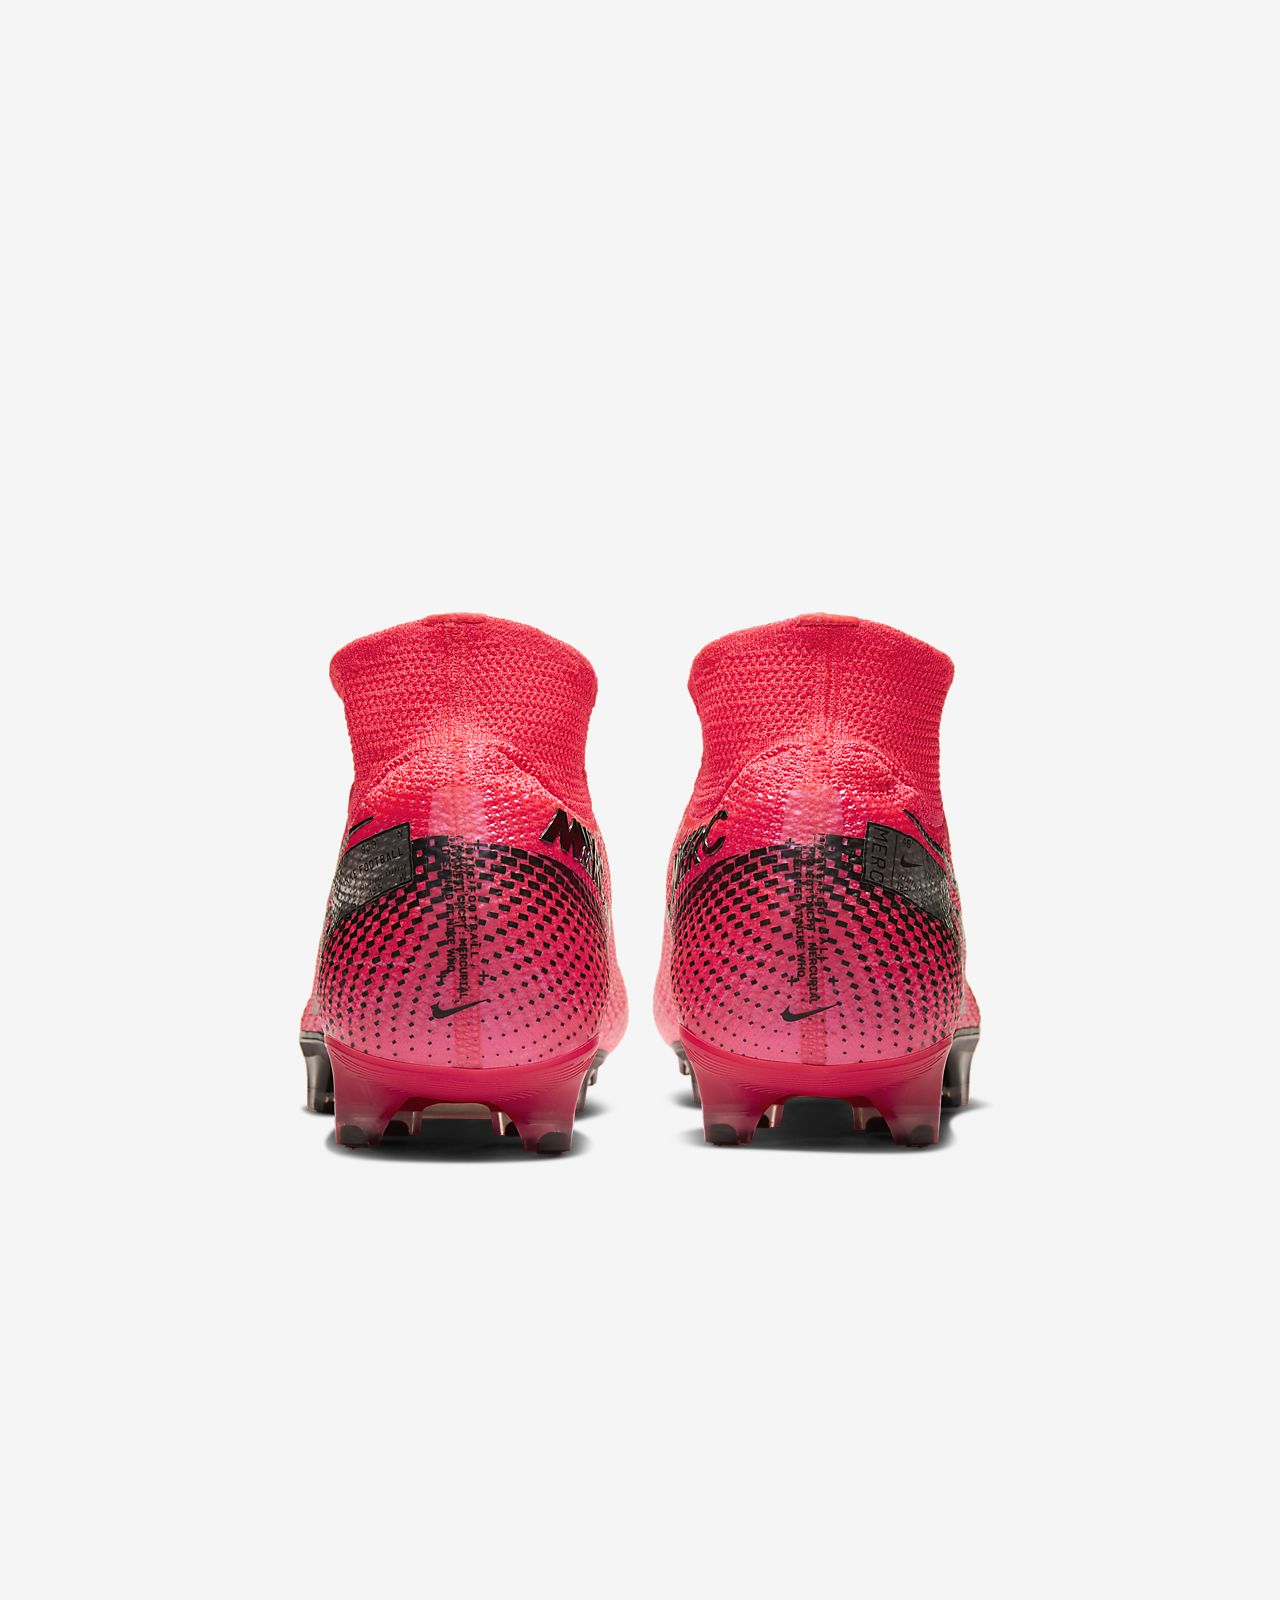 Jual Sepatu Bola Nike Mercurial Superfly 7 Elite Laser Orange.